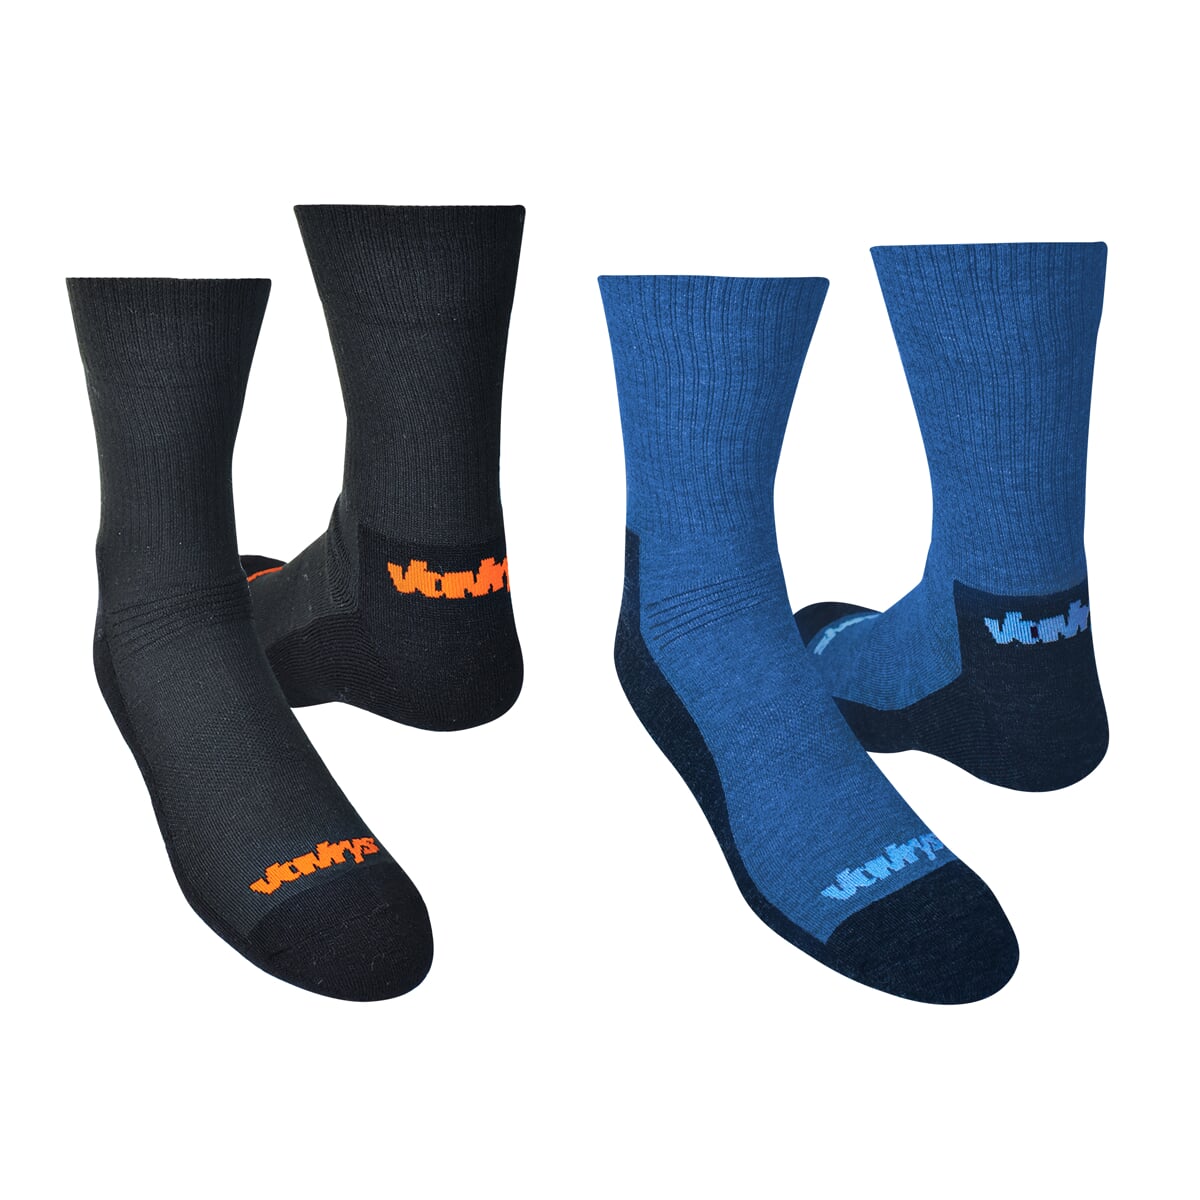 Ponožky VAVRYS TREK CMX 2020 2-pack